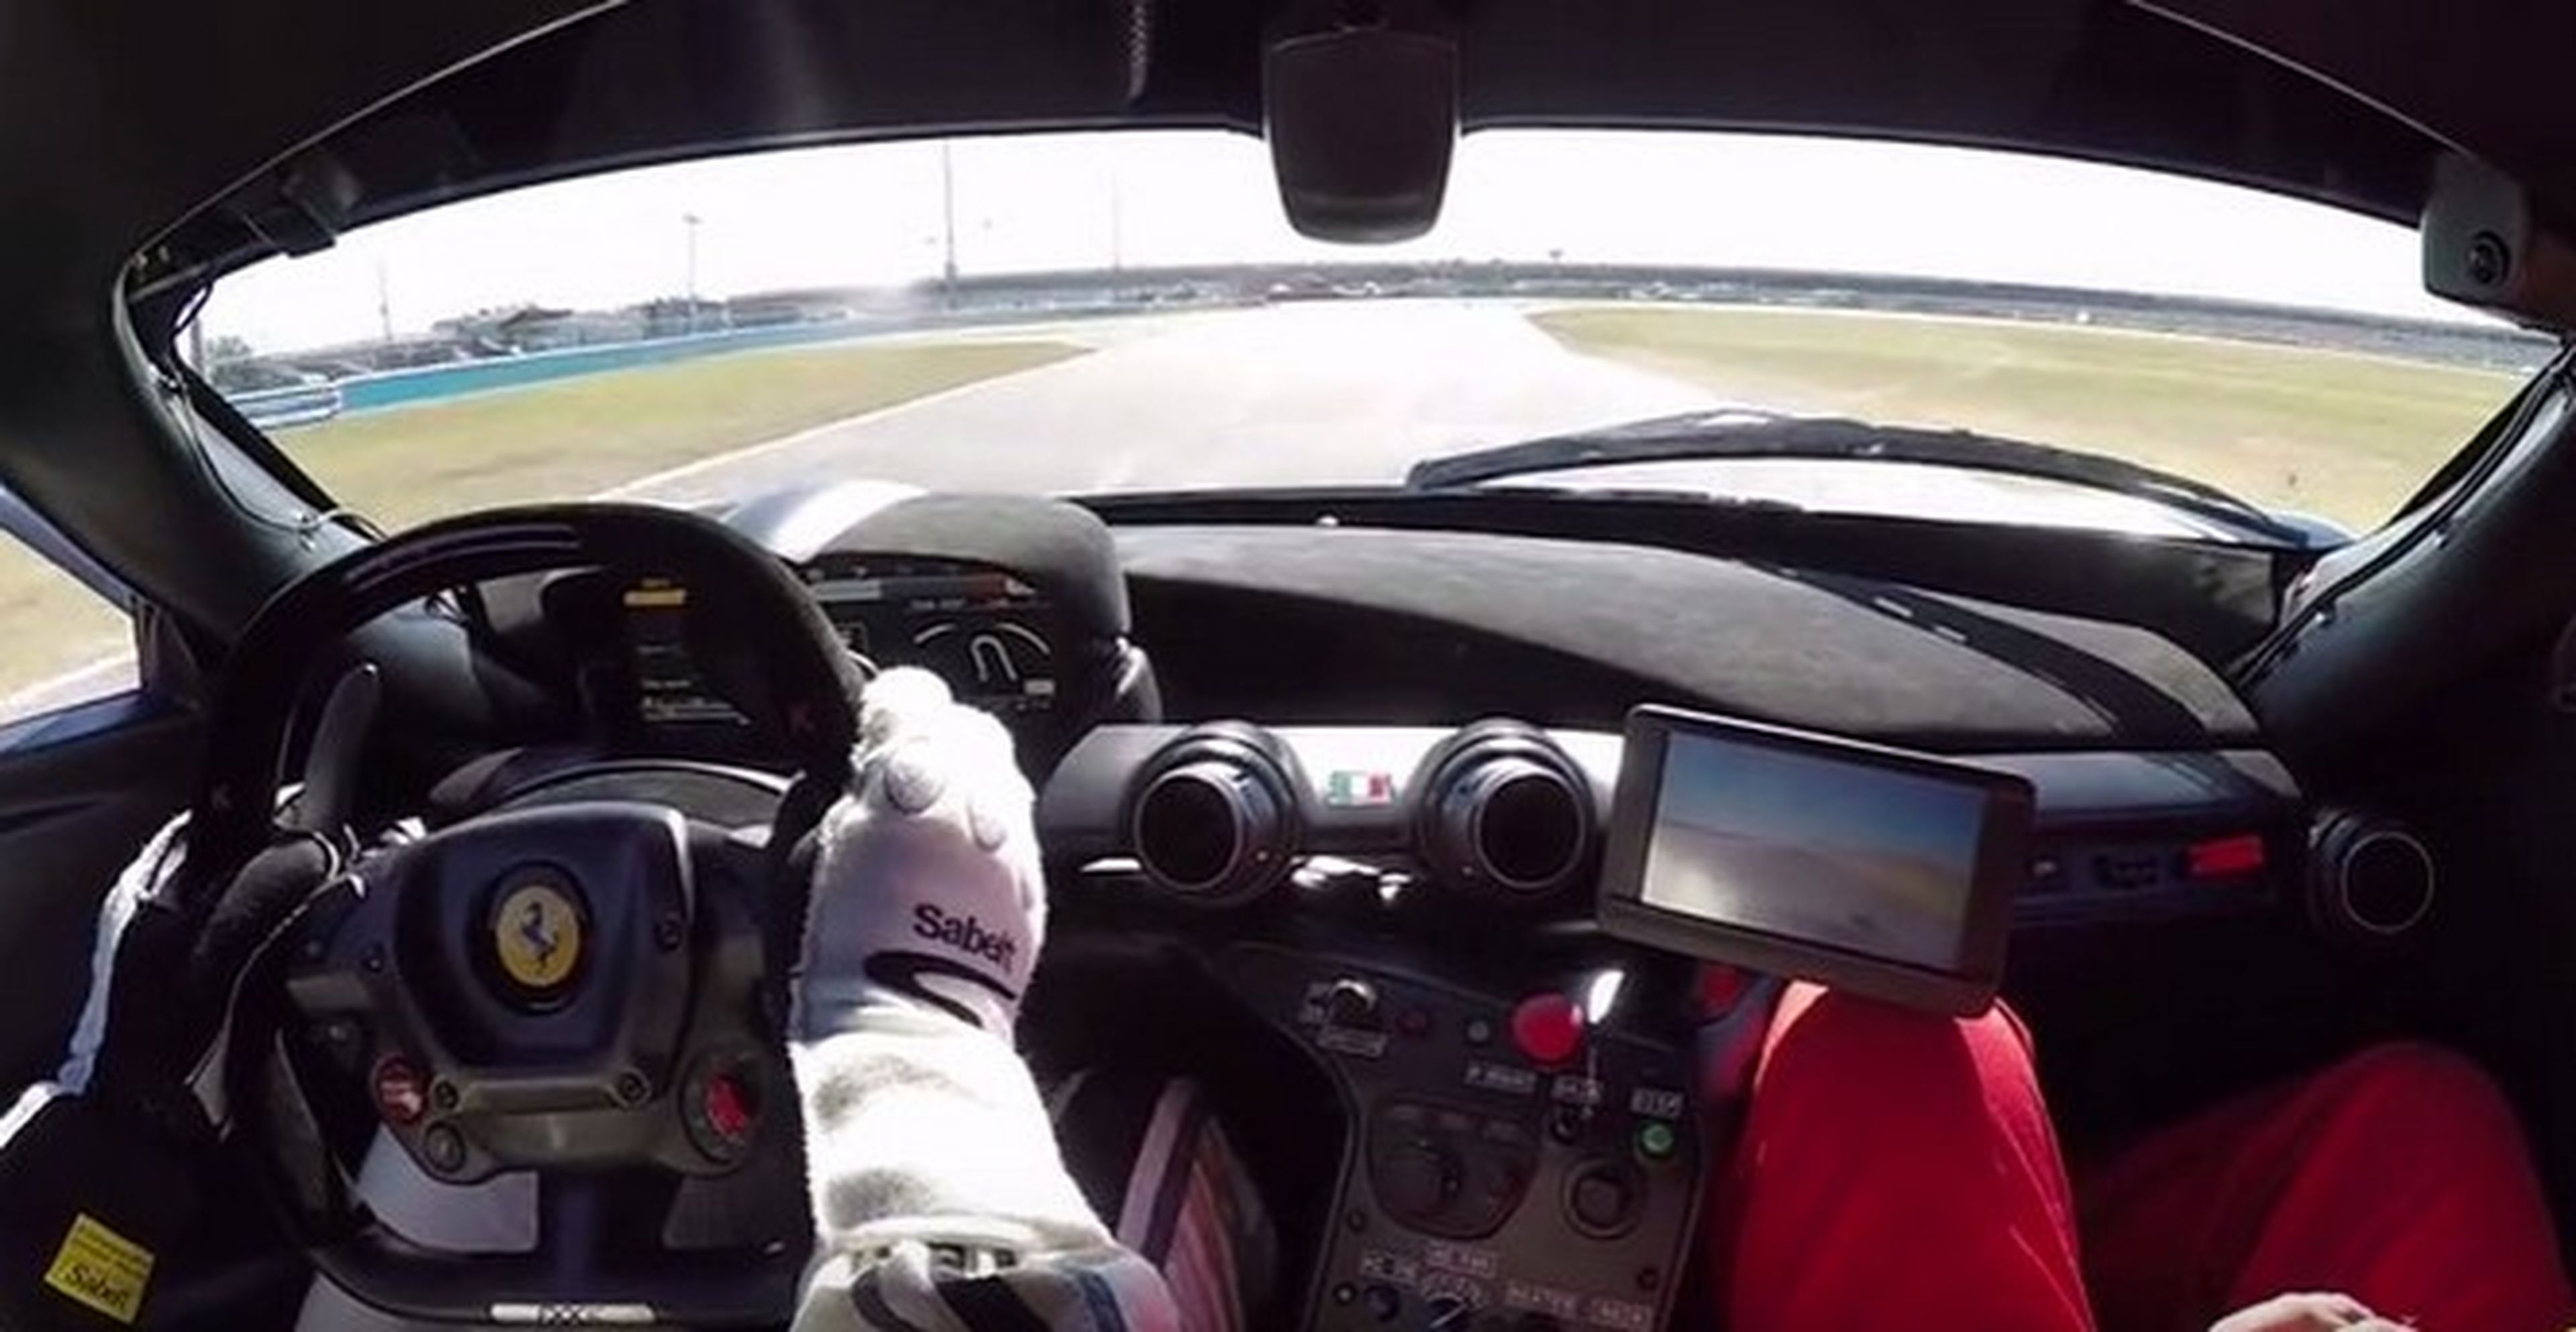 Vídeo: Así suena un Ferrari FXX K a 300 km/h